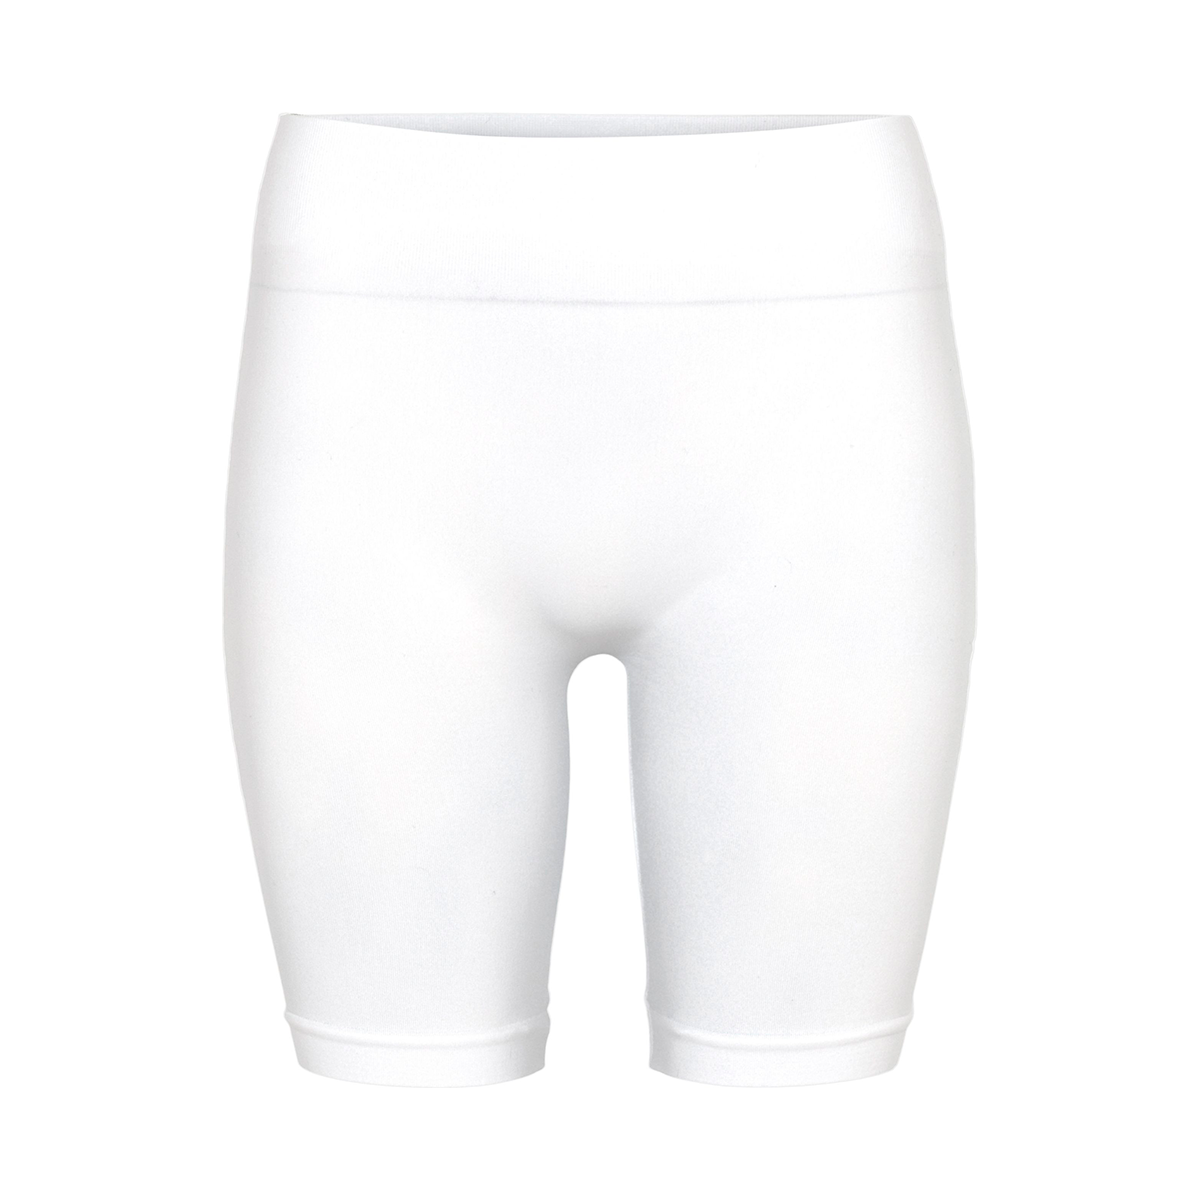 9: Decoy Seamless Shorts, Farve: Hvid, Størrelse: S/M, Dame